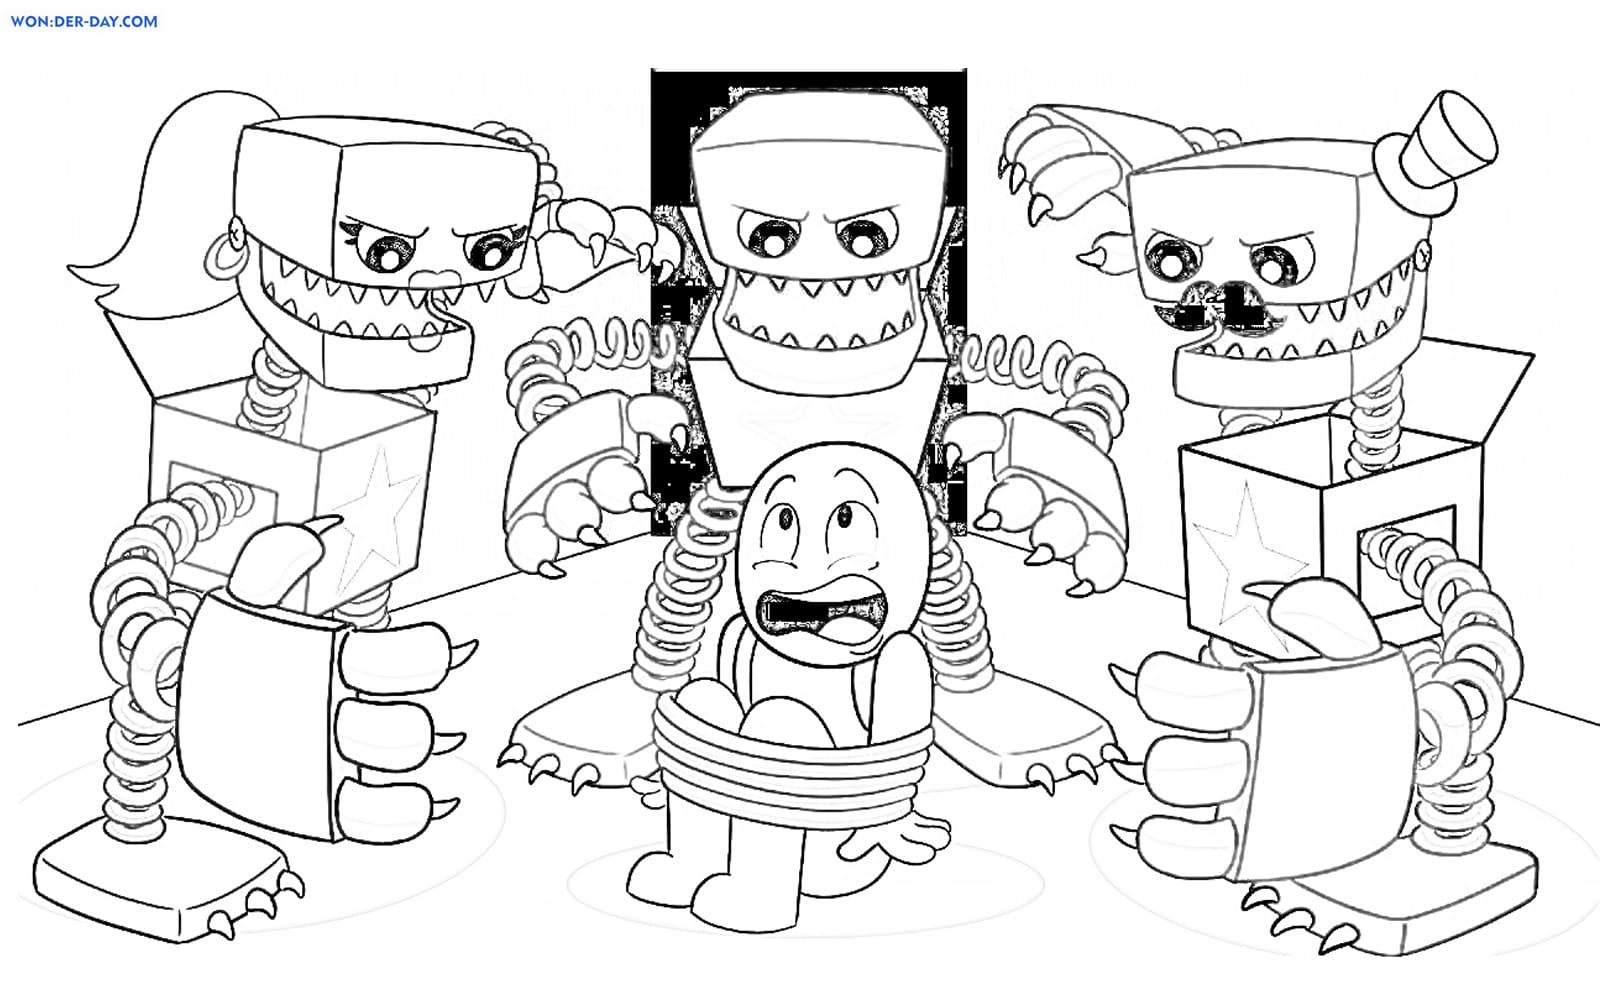 Ausmalbilder Boxy Boo WONDER DAY Ausmalbilder für Kinder und Erwachsene